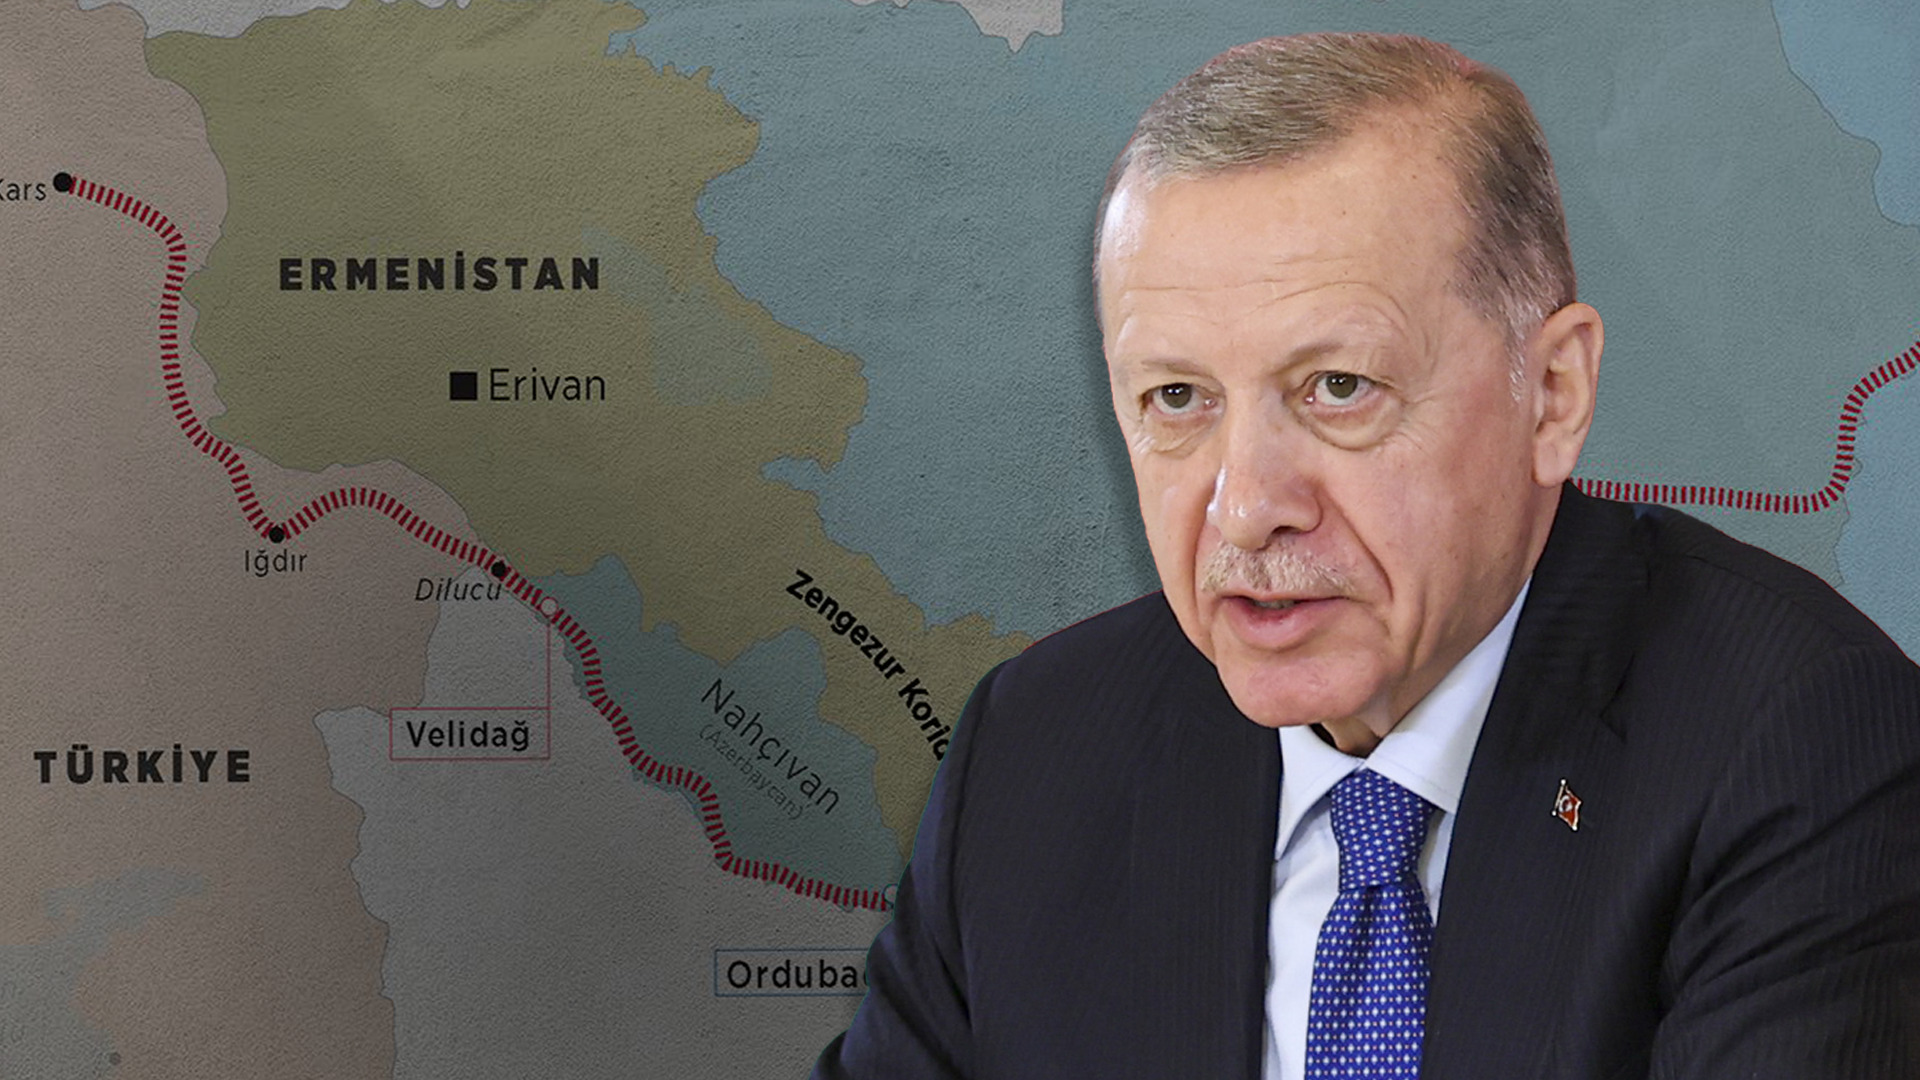 Zengezur Koridoru ne zaman açılacak? Cumhurbaşkanı Erdoğan'dan İran'a tepki | Politika Haberleri